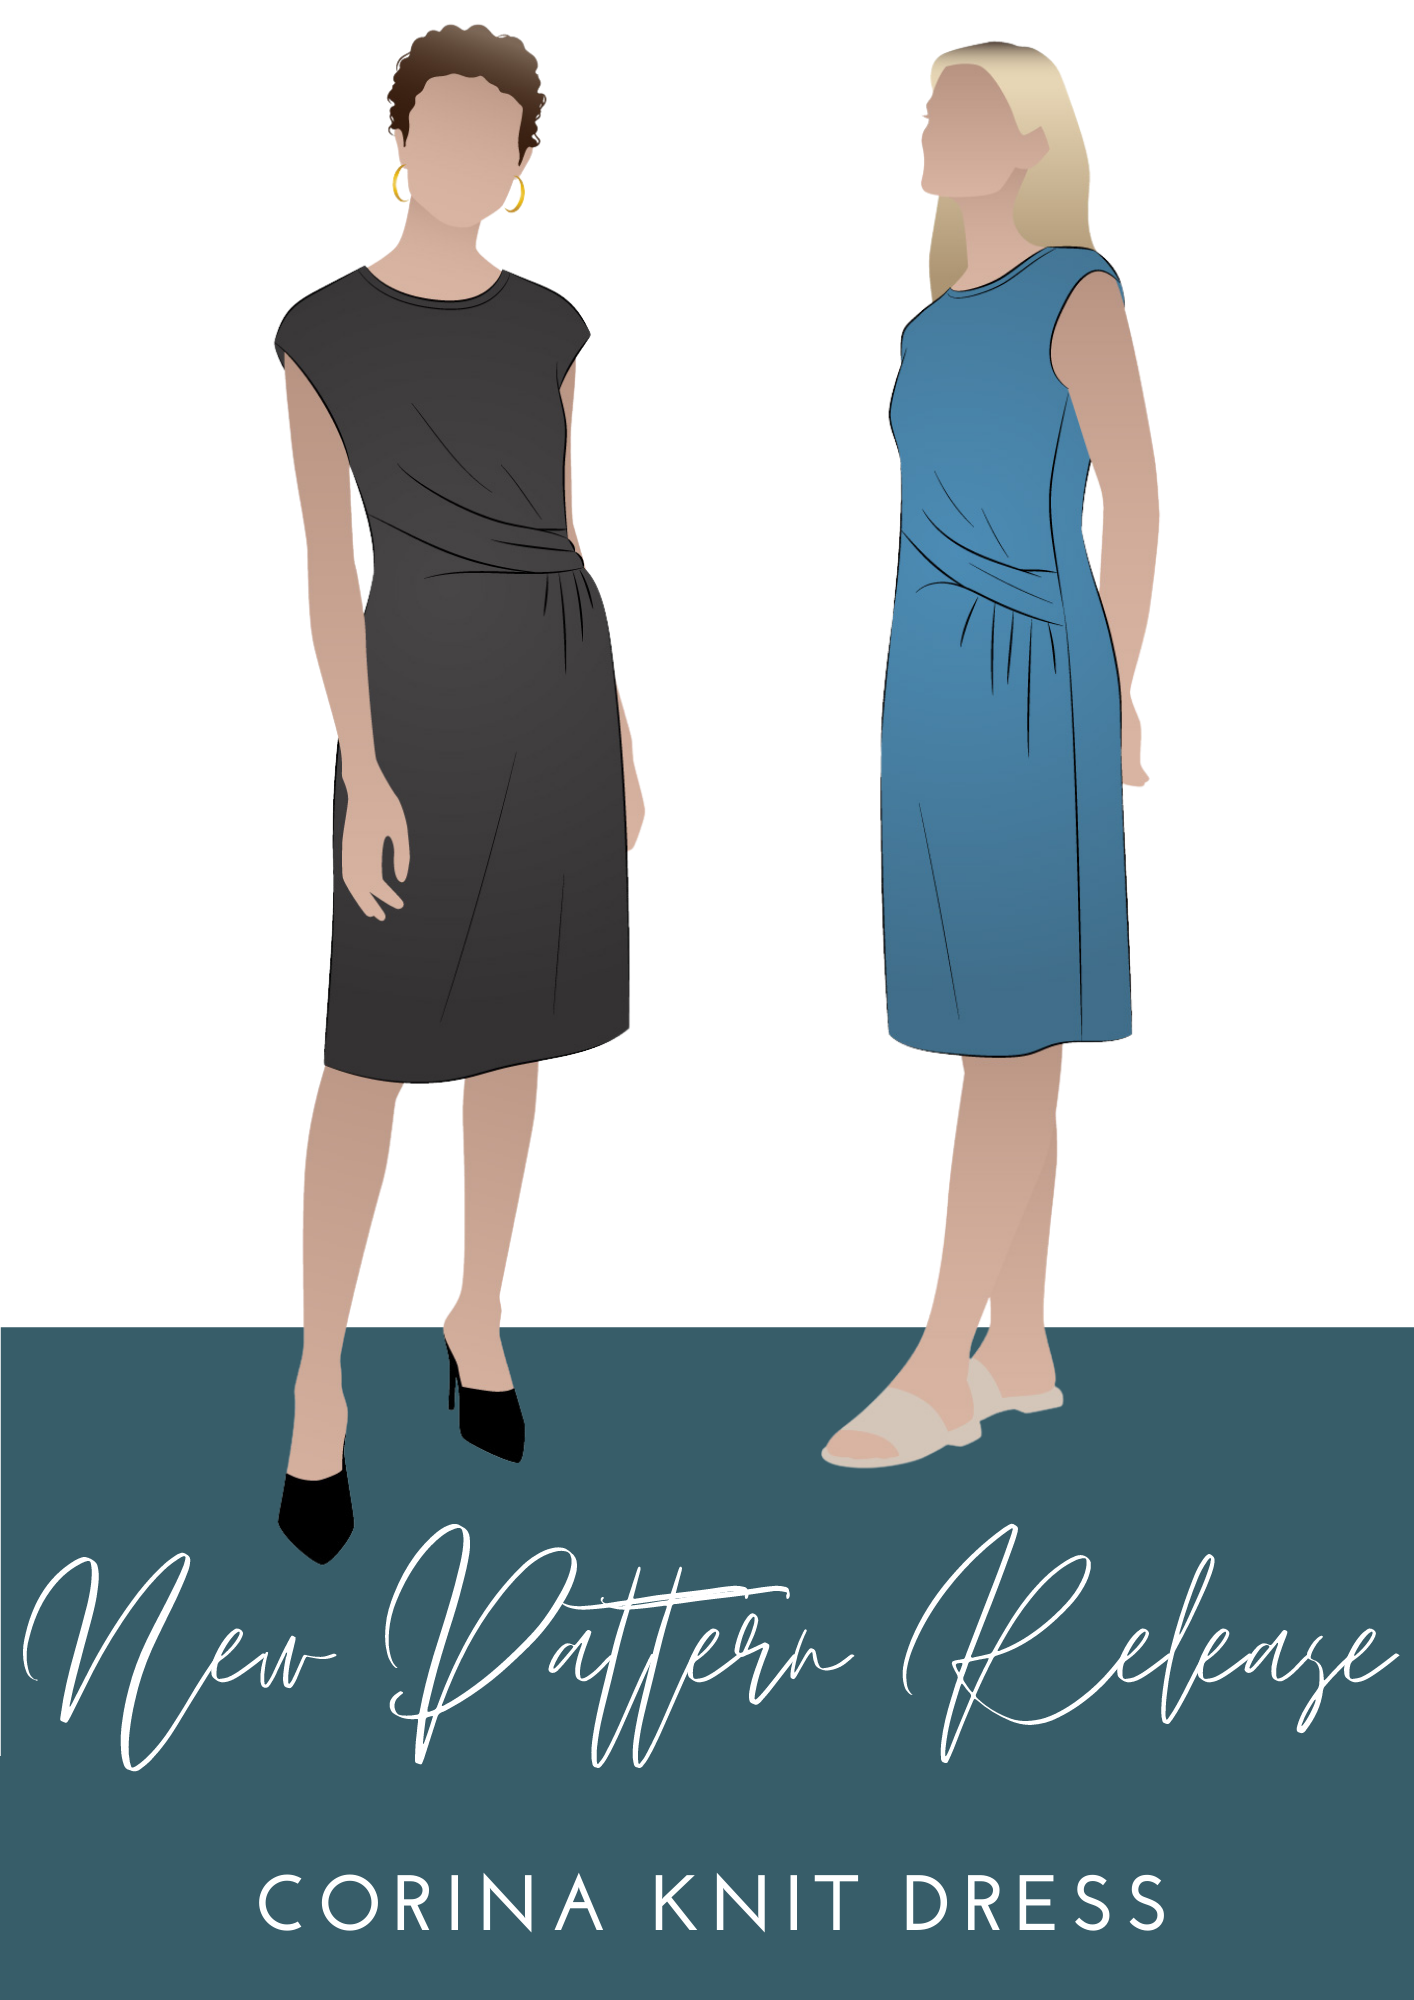 New Pattern Release - Corina Knit Dress 